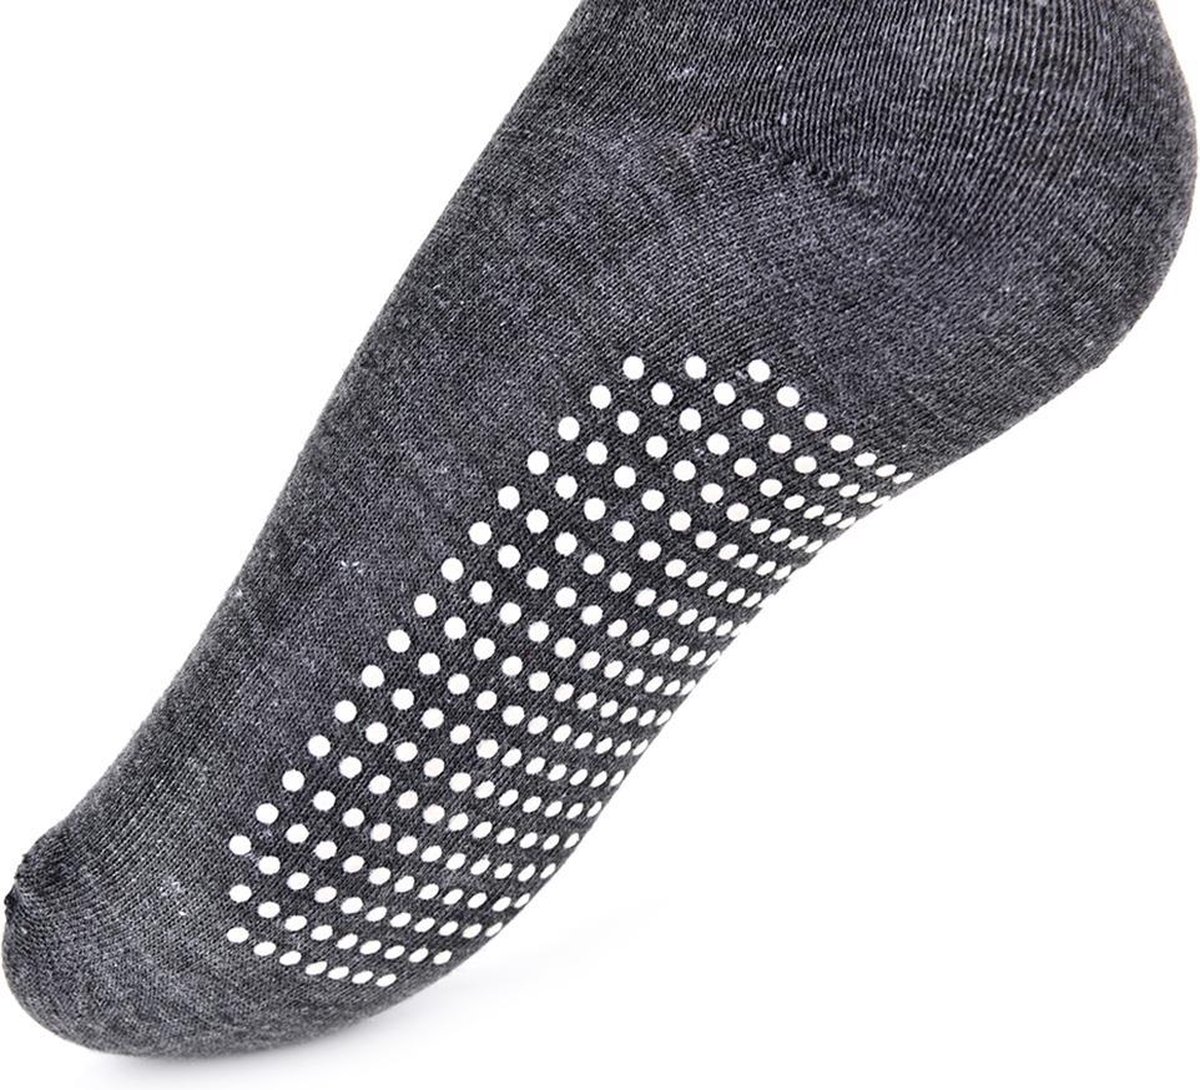 Toermalijnen sokken van katoen met zelf opwarmende toermalijnen steentjes -  thermo -... | bol